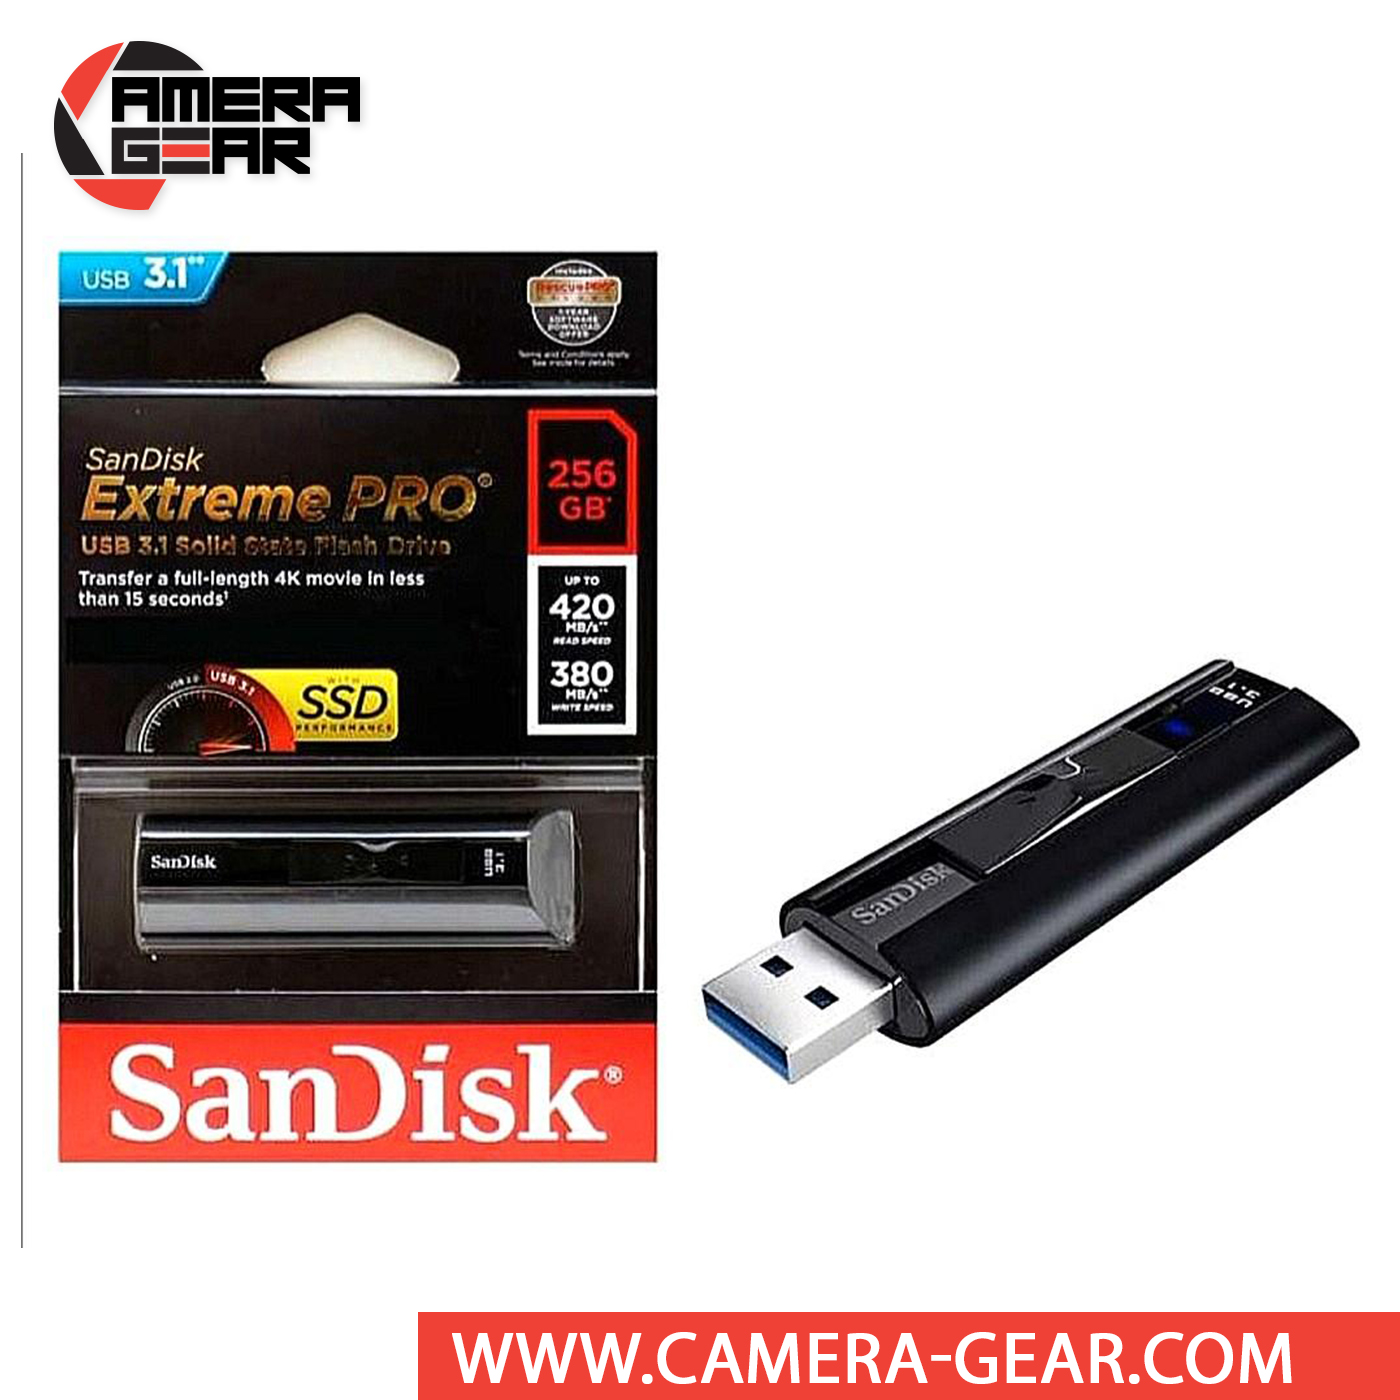 Virksomhedsbeskrivelse Awaken absurd SanDisk 256GB Extreme Pro USB 3.1 Solid State Flash Drive